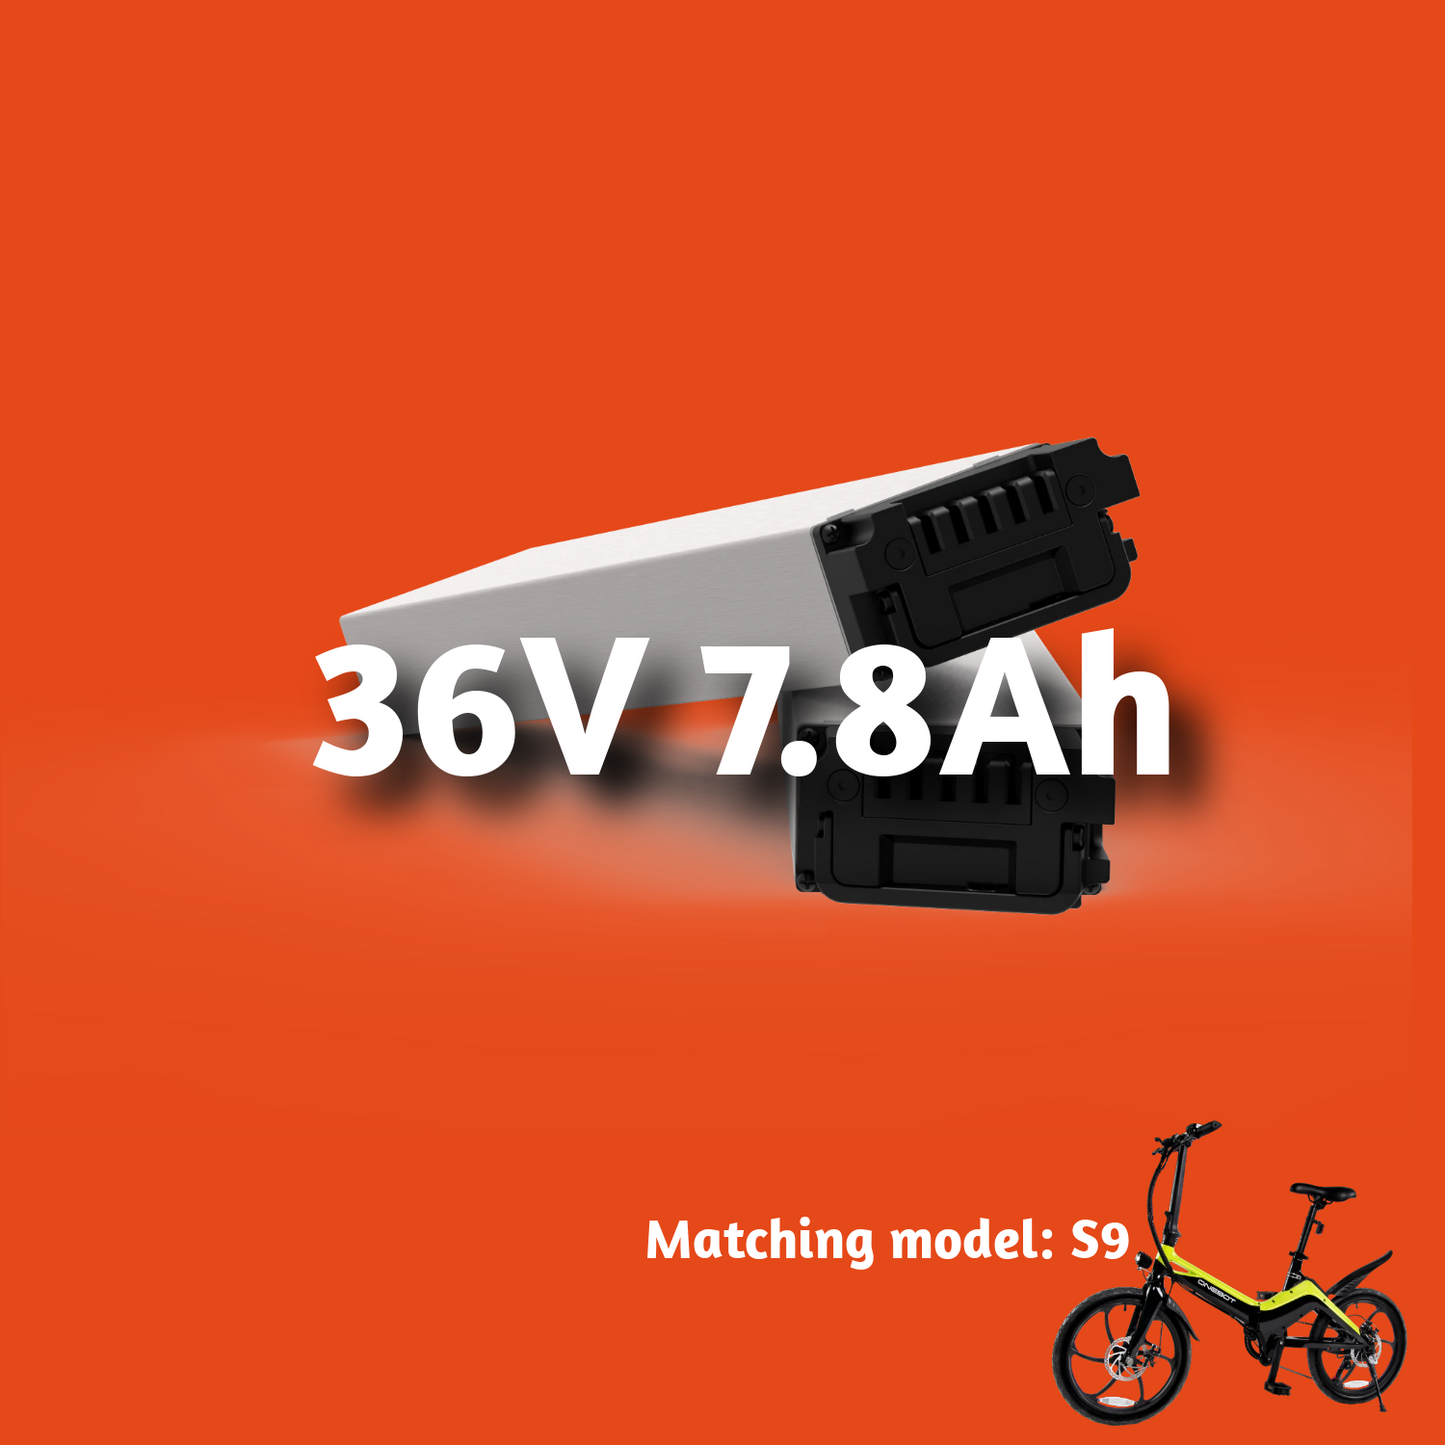 36V 7.8Ah Lithium battery丨ONEBOT S9 Dedicated